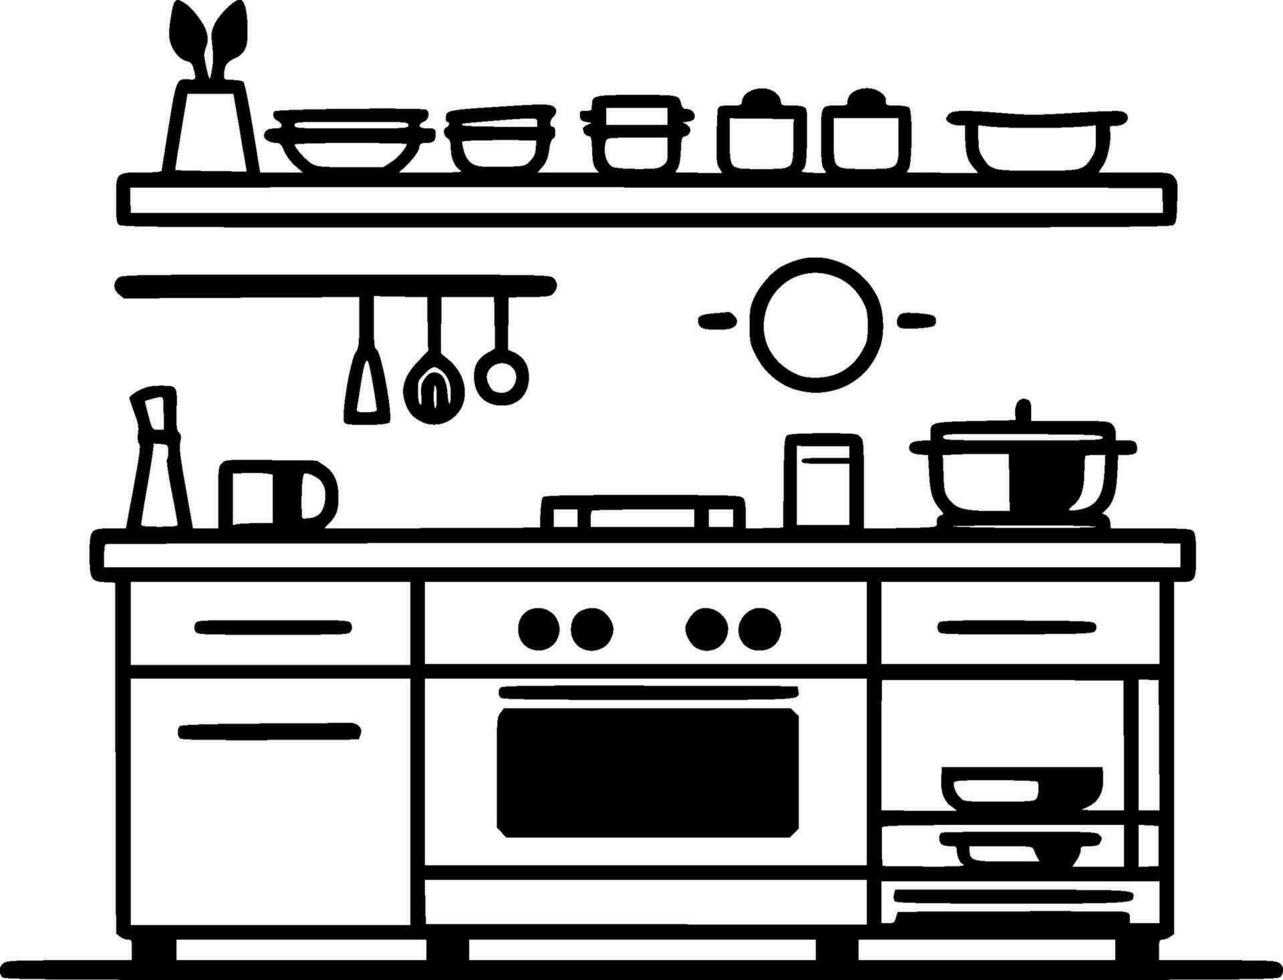 kök - svart och vit isolerat ikon - vektor illustration